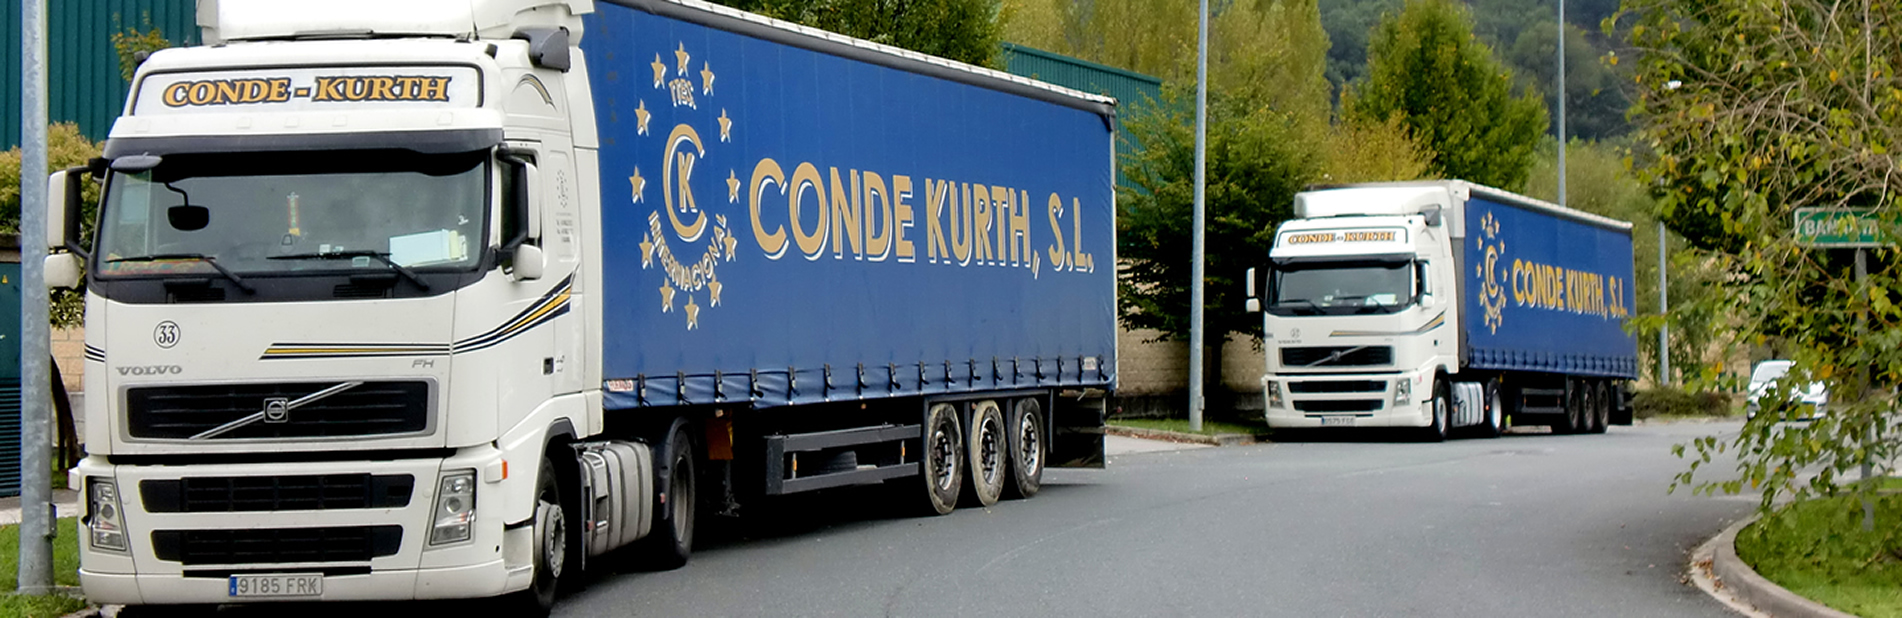 CONDE-KURTH - Transporte internacional de mercancías